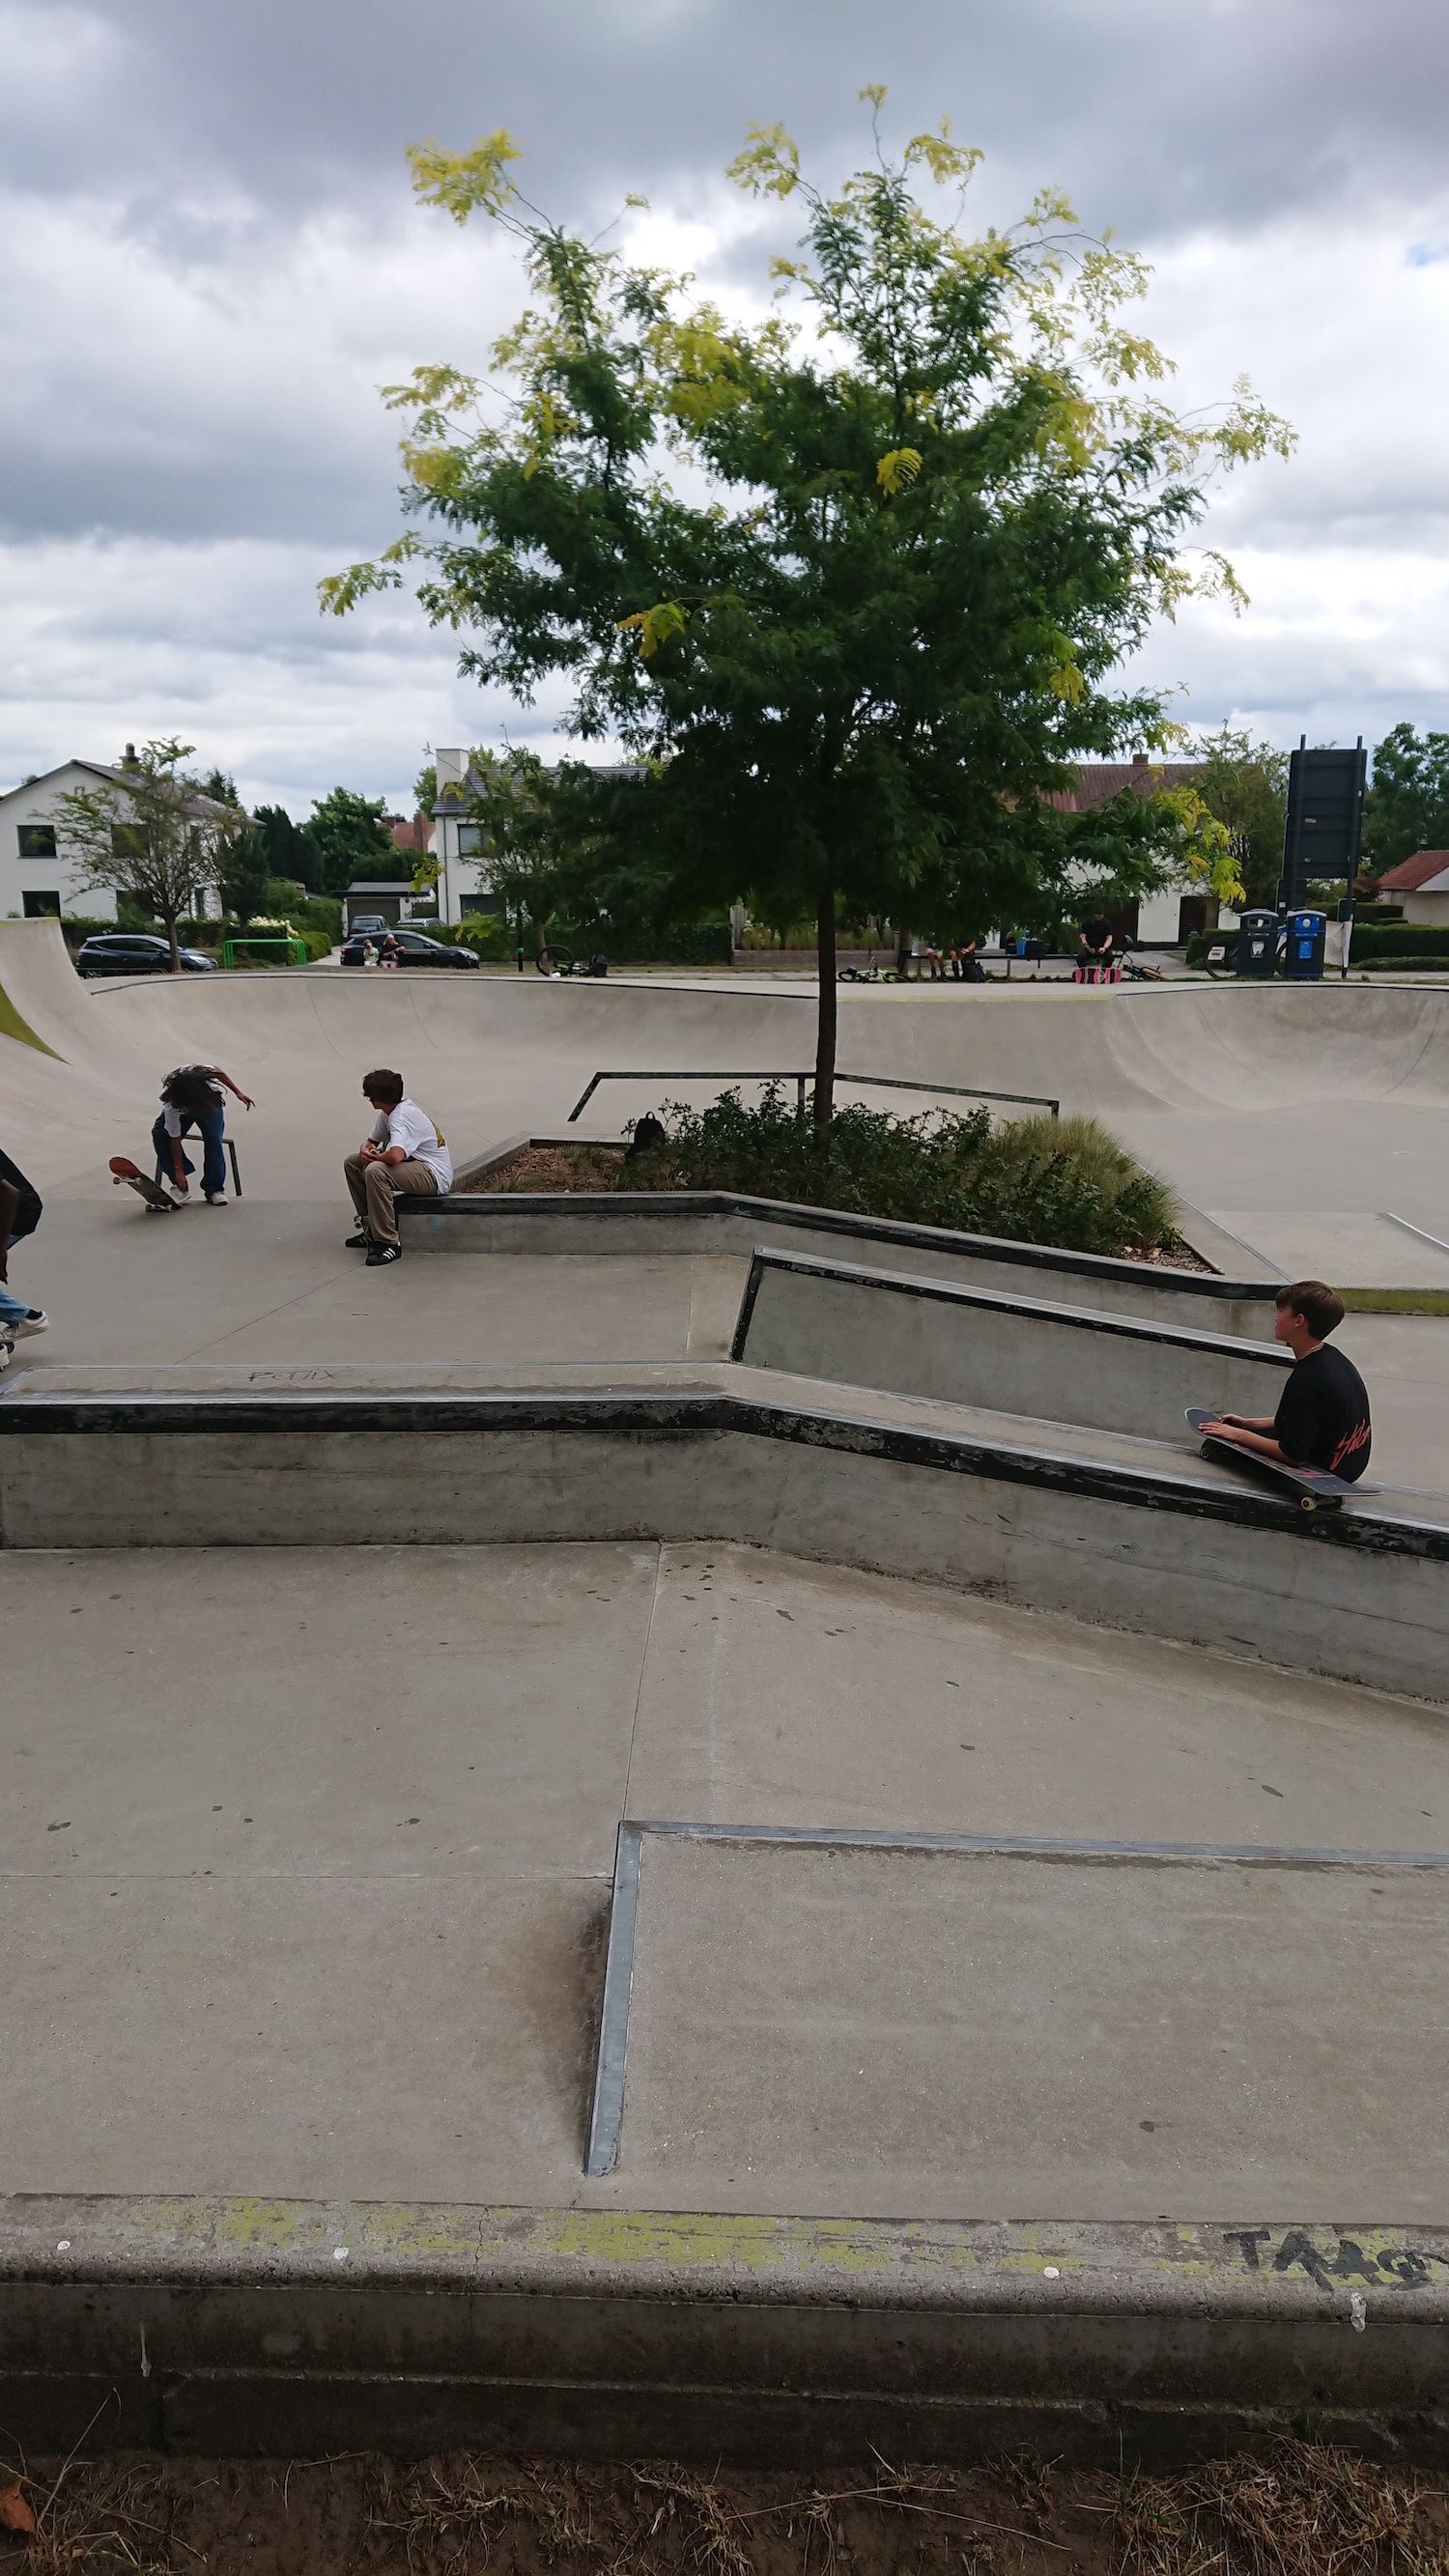 Lokeren skatepark